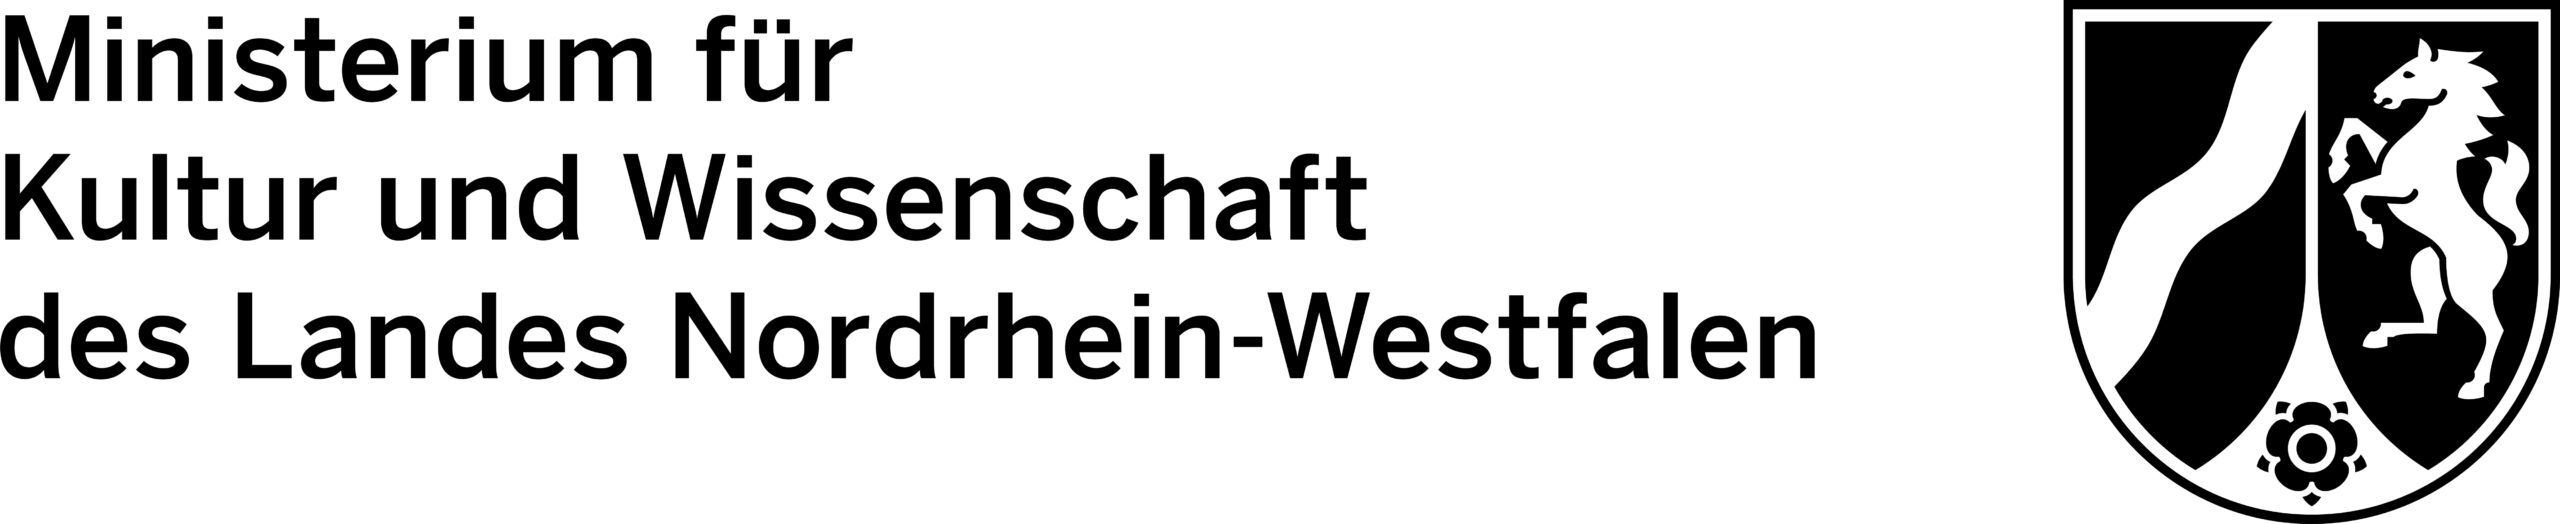 SHADOWING logo staatskanzlei nrw logo_schwarz_weiss_mkw_nrw_kultur_und_wissenschaft_cmyk_0